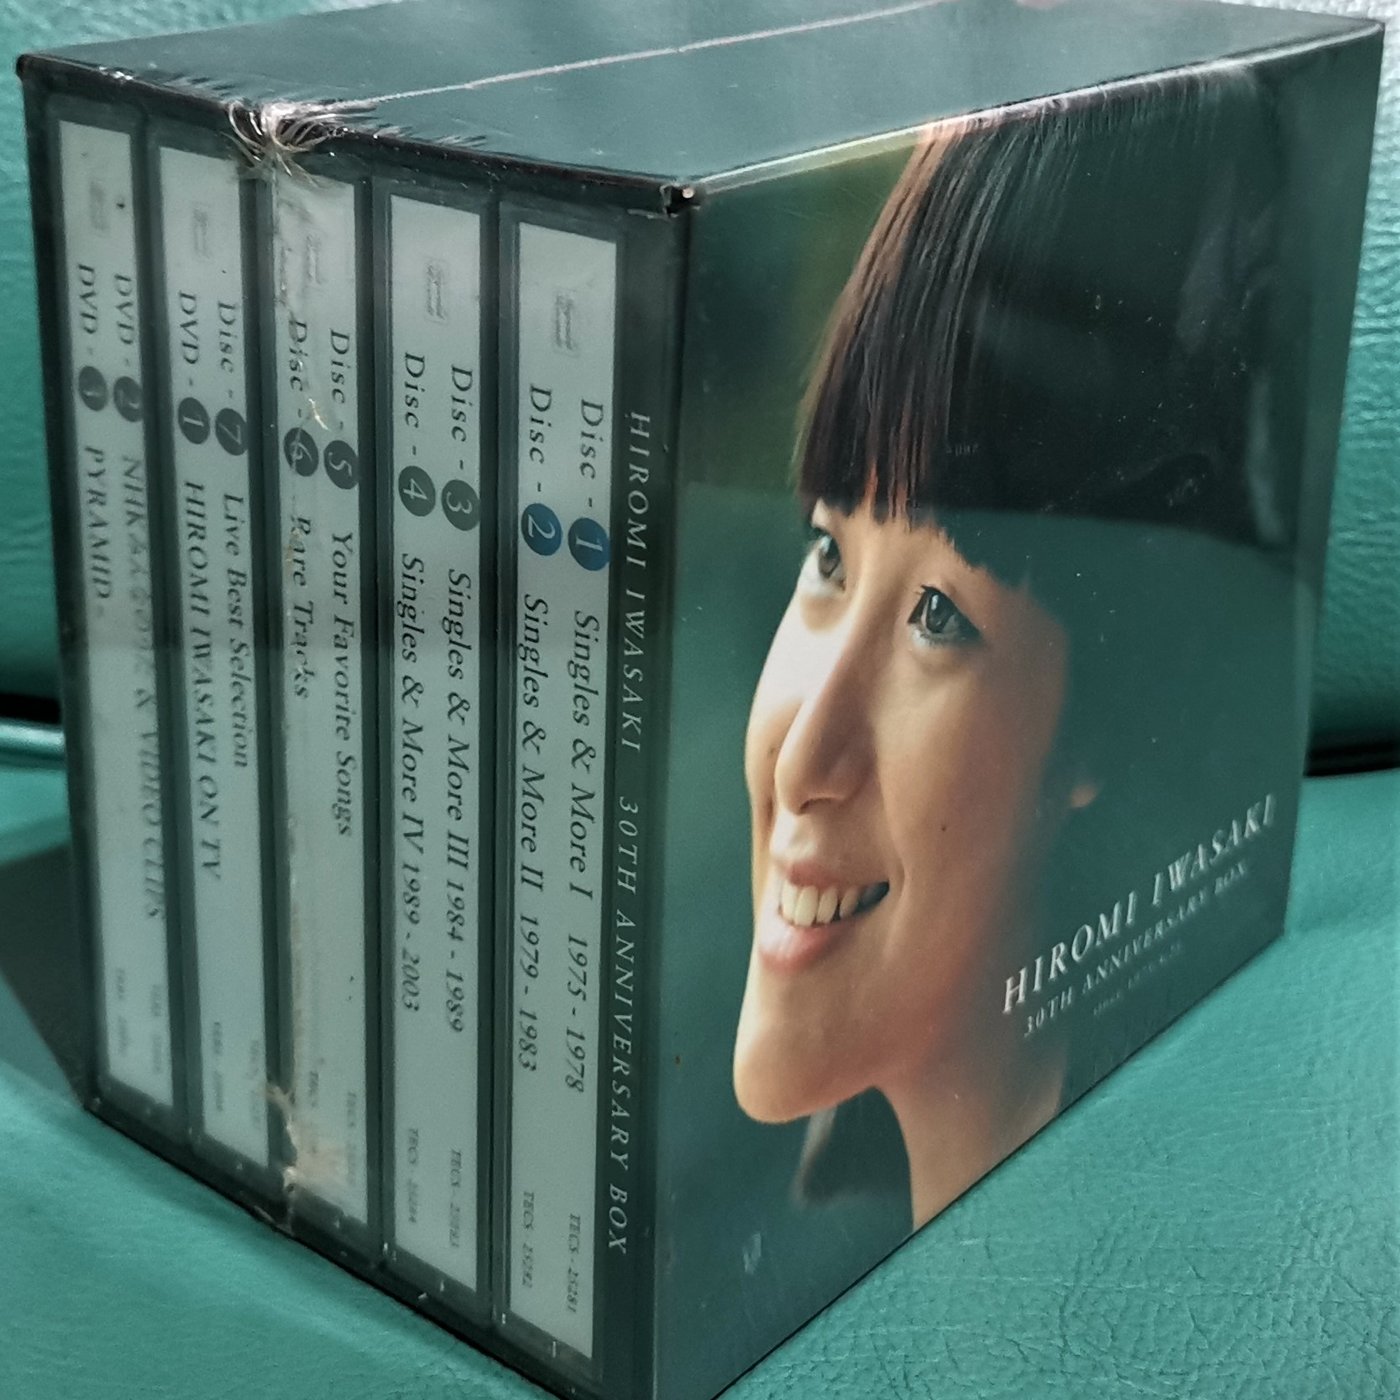 岩崎宏美30TH ANNIVERSARY BOX ,7CD + 3DVD 收錄丁曉慧熱帶魚日本原曲 